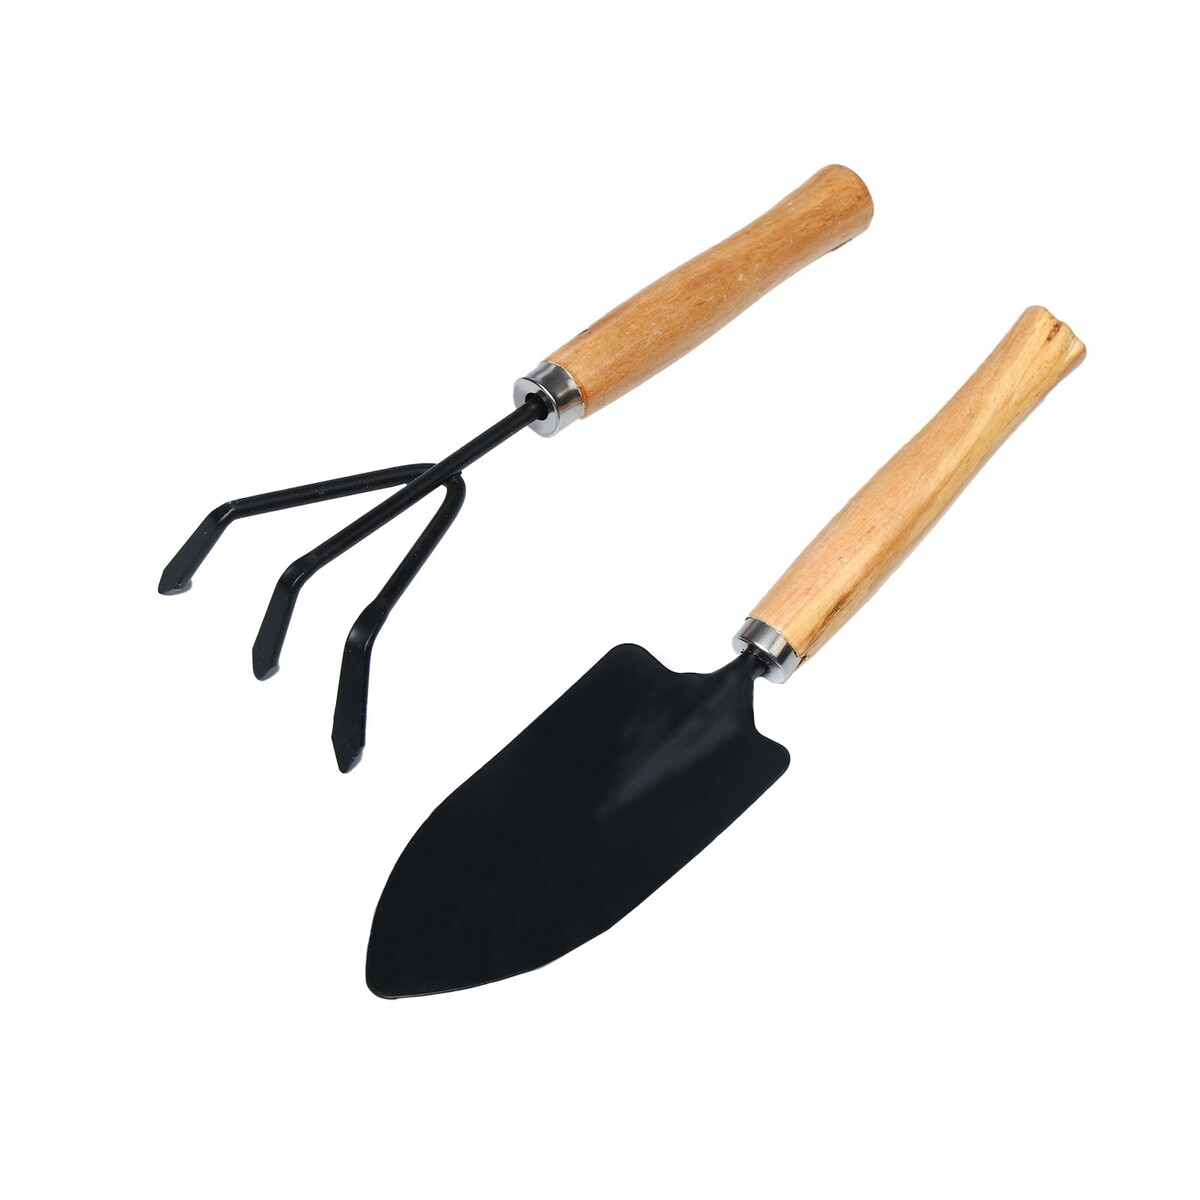 Набор садового инструмента, 2 предмета: рыхлитель, совок, длина 26 см, деревянные ручки набор ножей для стейка из нержавеющей стали доляна h 23 5 см толщина ручки 4 мм 3 шт